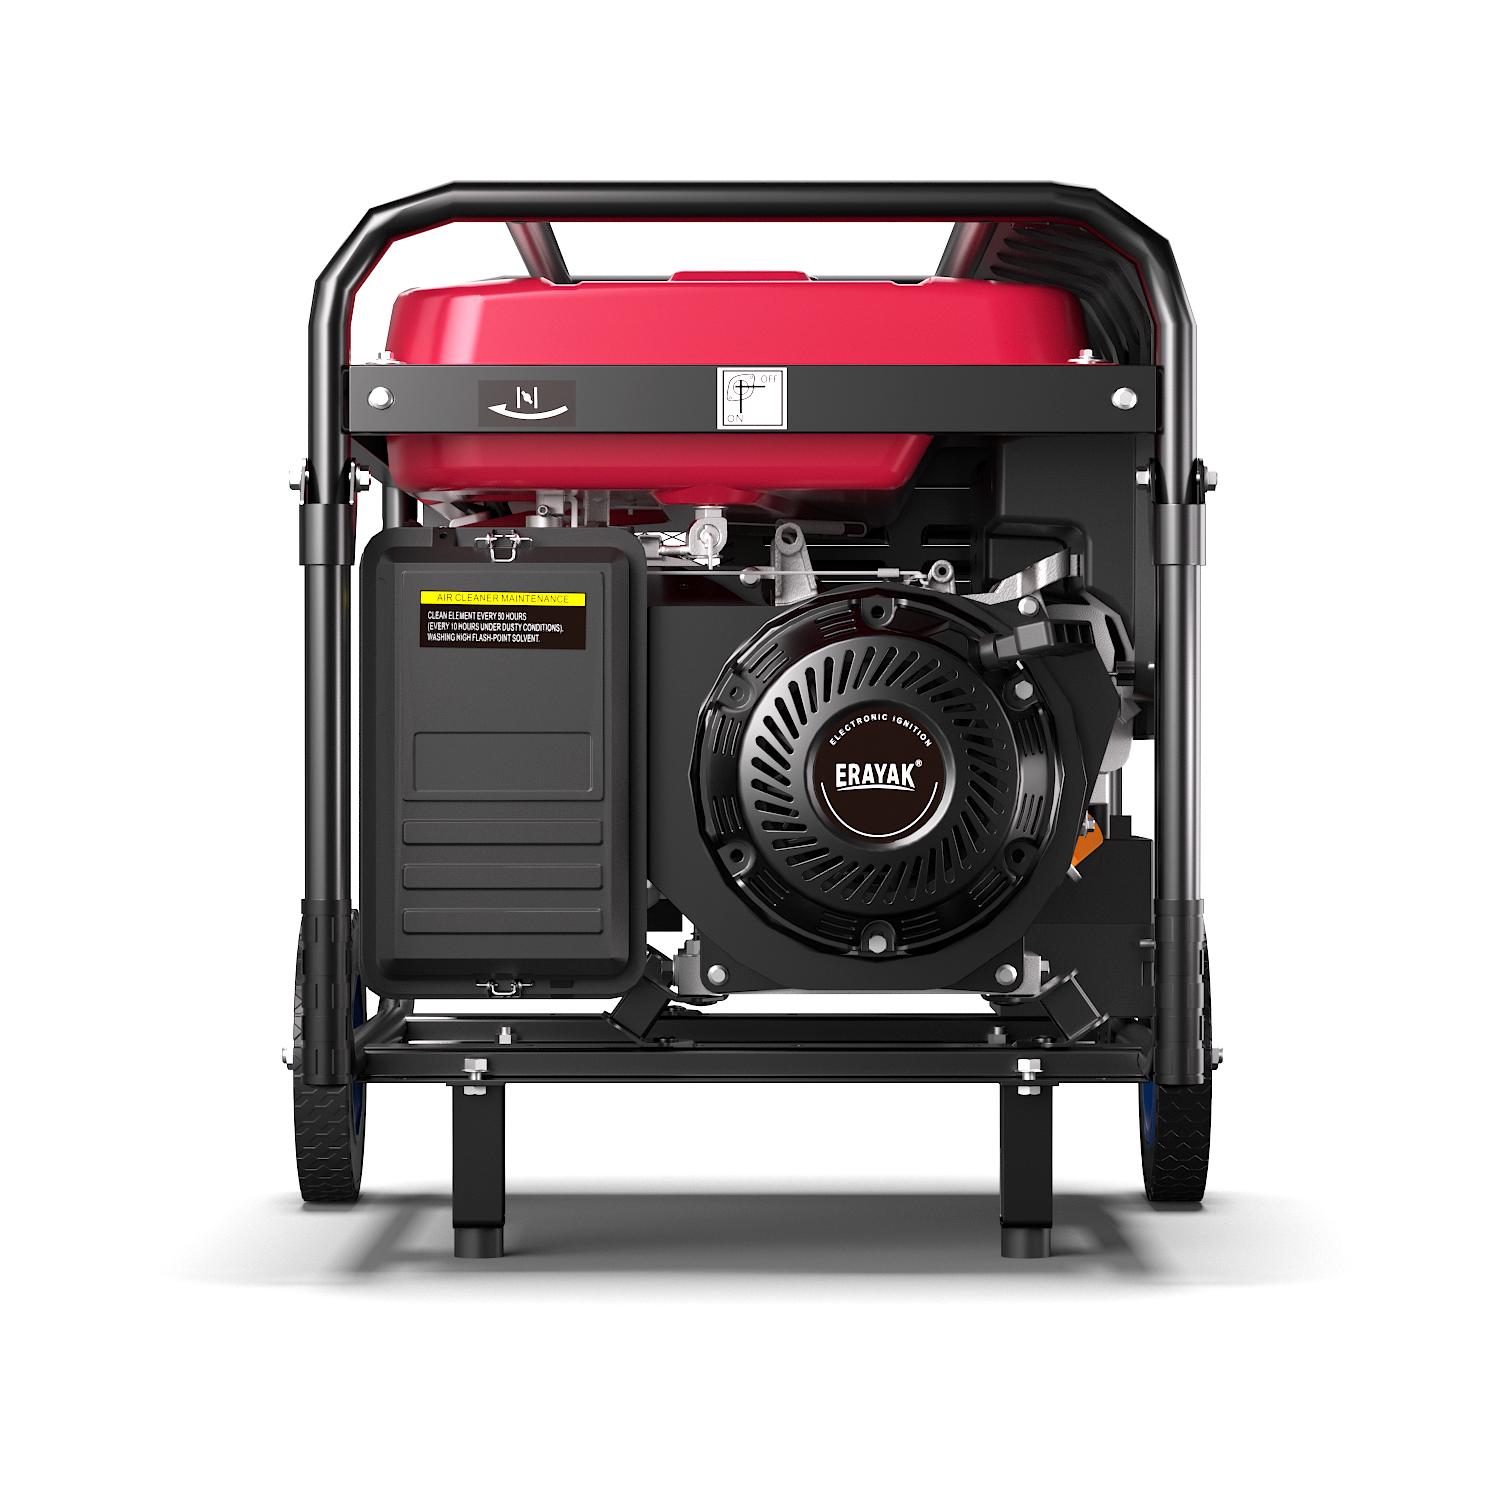 EYG2600G Benzingenerator 2600 W, Outdoor-Generator für die Notstromversorgung zu Hause